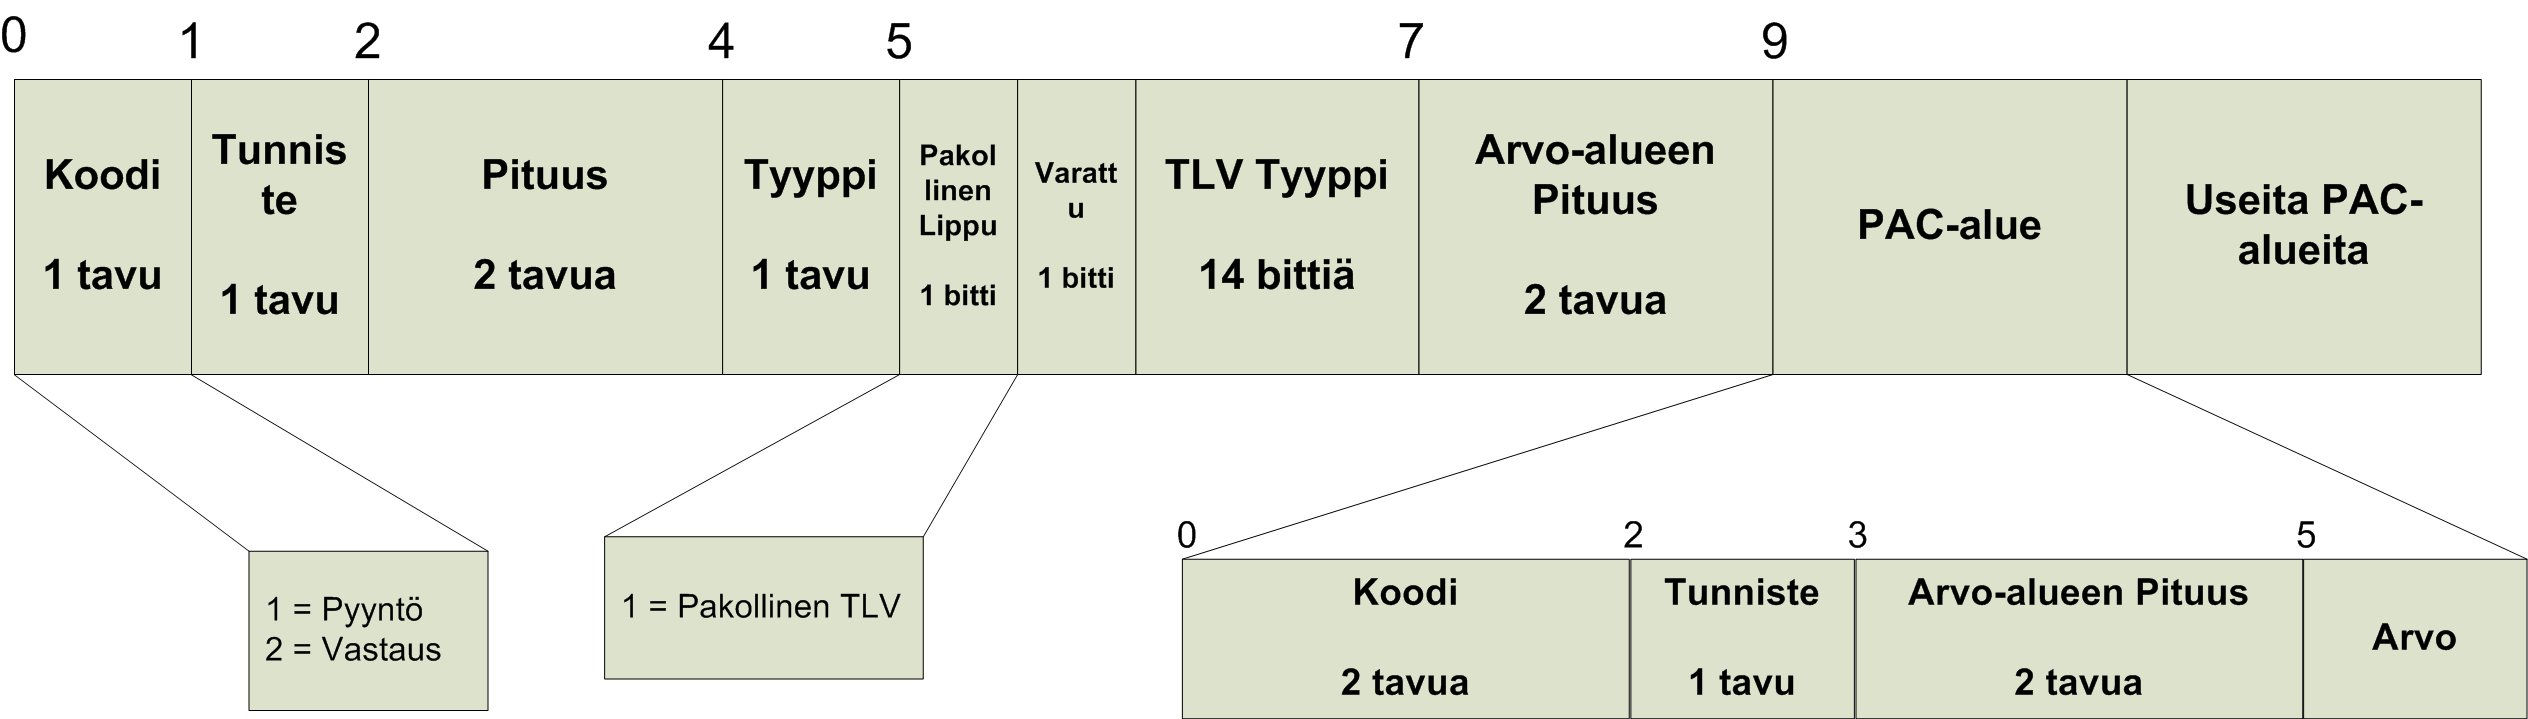 44 Tyyppi-kentän arvona PAC TLV -kehyksessä on EAP-TLV eli 33. Pakollinen TLV-bitti tulee olla päällä PAC TLV:ssä.